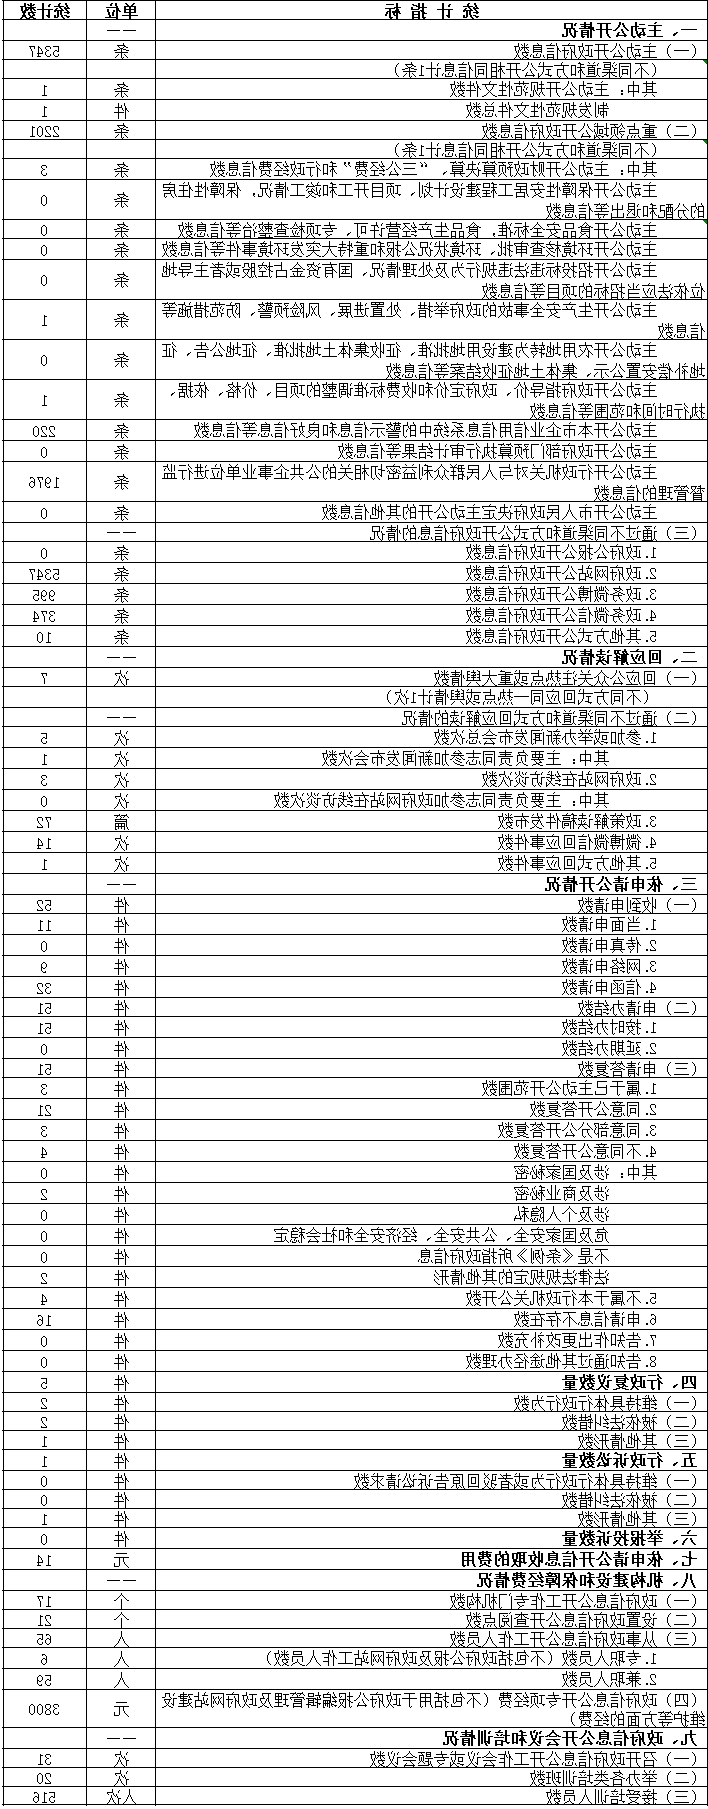 北京市质量技术监督局政府信息公开情况统计表